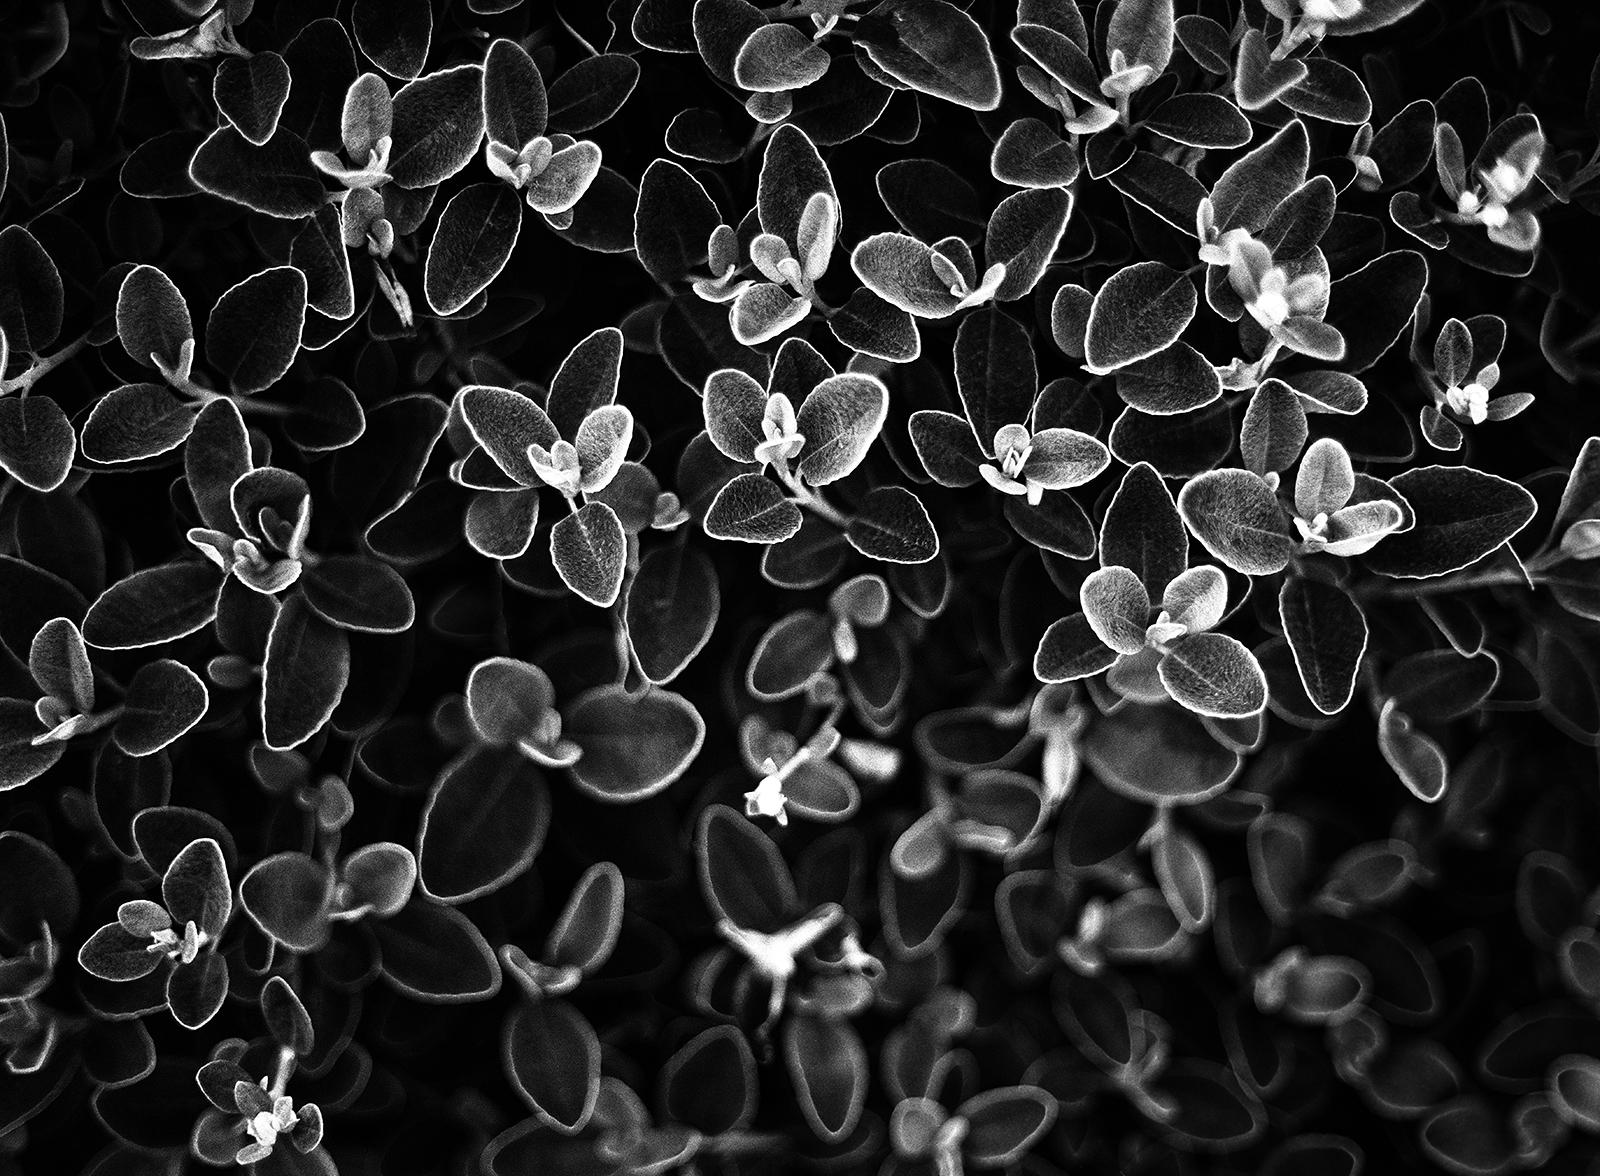 Blumenblumen- signierter Kunstdruck in limitierter Auflage, Schwarz-Weiß- Naturfoto, zeitgenössisch (Zeitgenössisch), Photograph, von Ian Sanderson